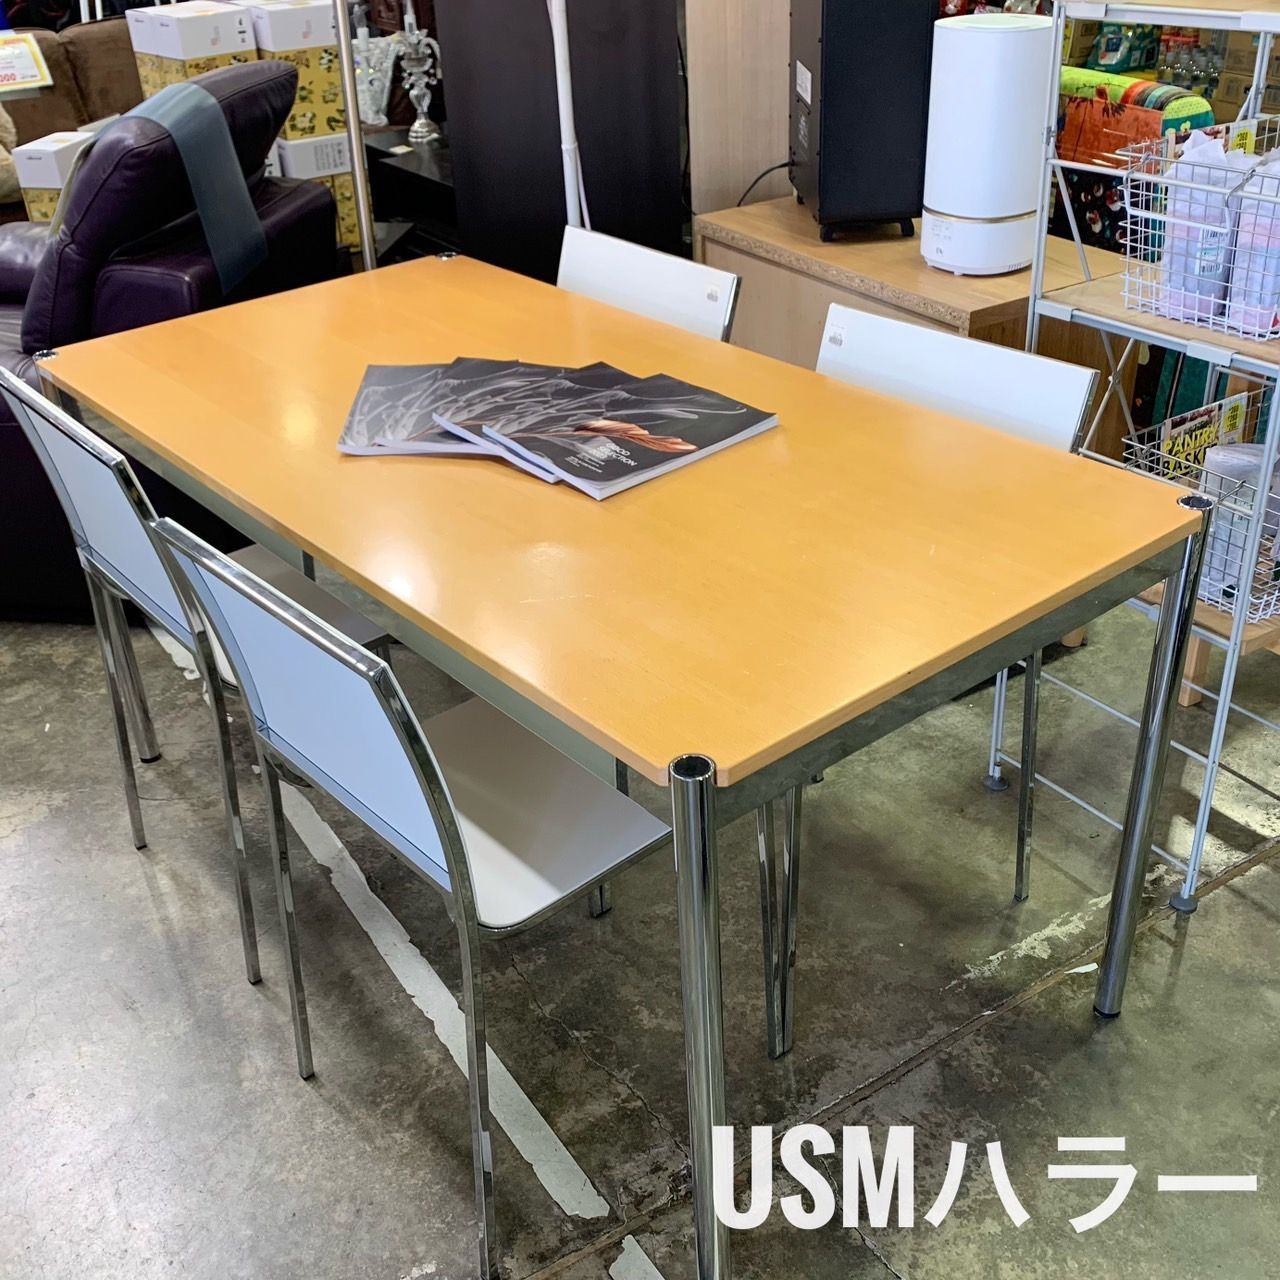 USM ハラー ハラーテーブル W150 ワークテーブル ミーティングテーブル ダイニングテーブル